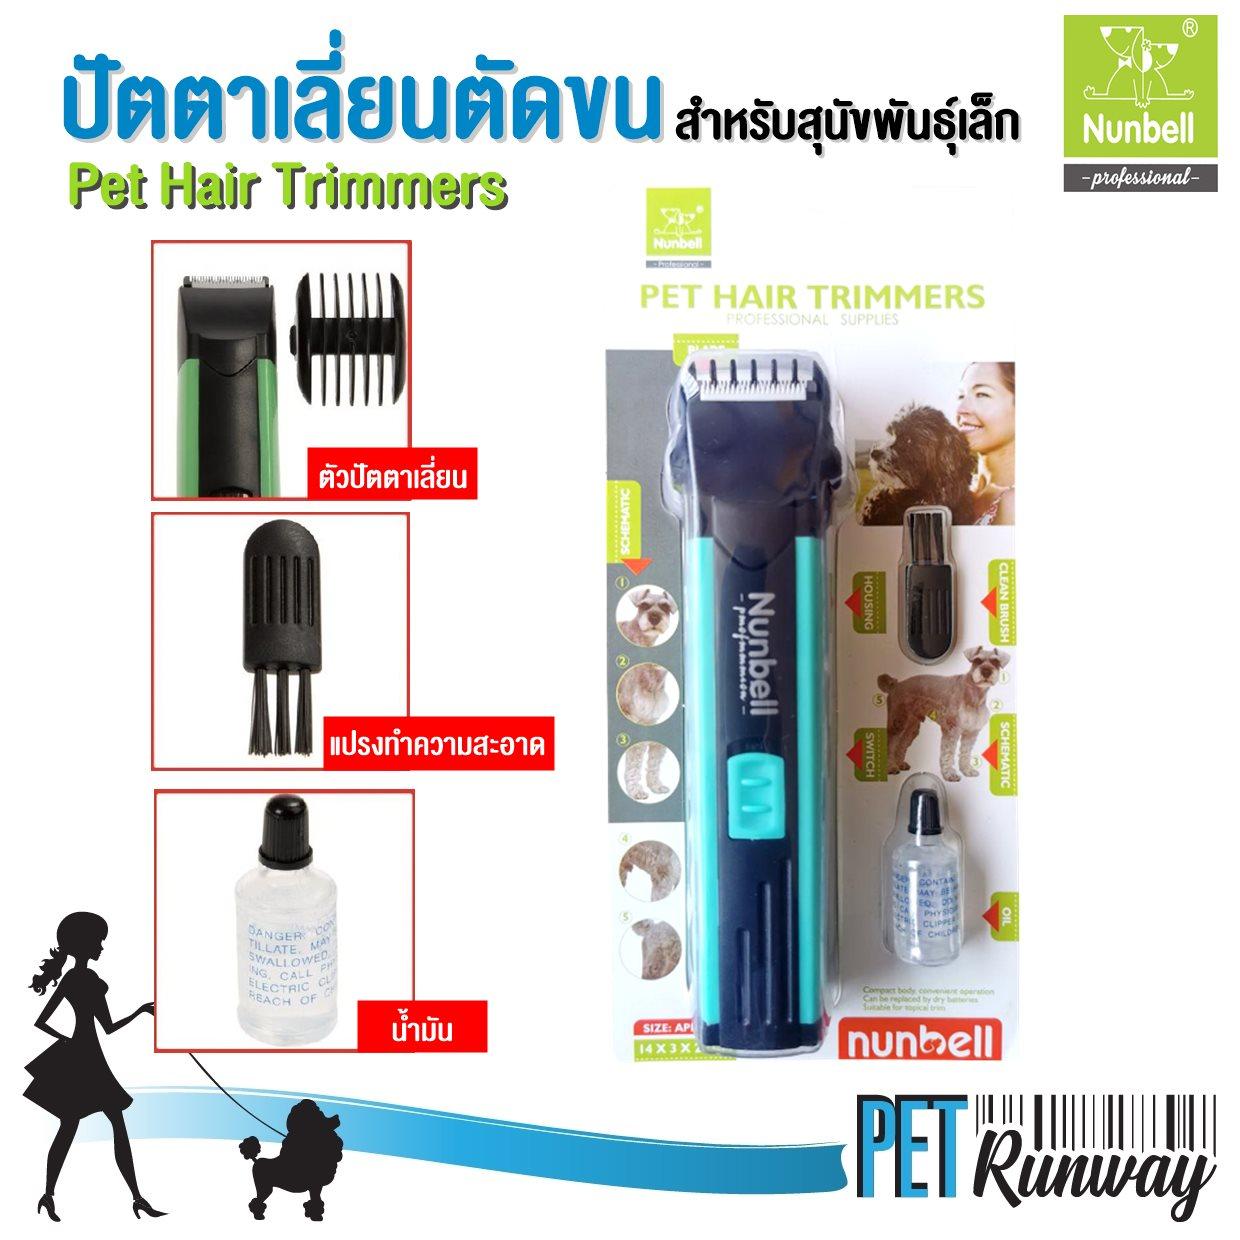 Pet Hair Trimmers ปัตตาเลี่ยน ตัดขนสุนัข ตัดขนแมว สีฟ้า สำหรับพันธุ์เล็ก พร้อมอุปกรณ์ครบเซ็ต ขนาด 3.6x14.5 cm